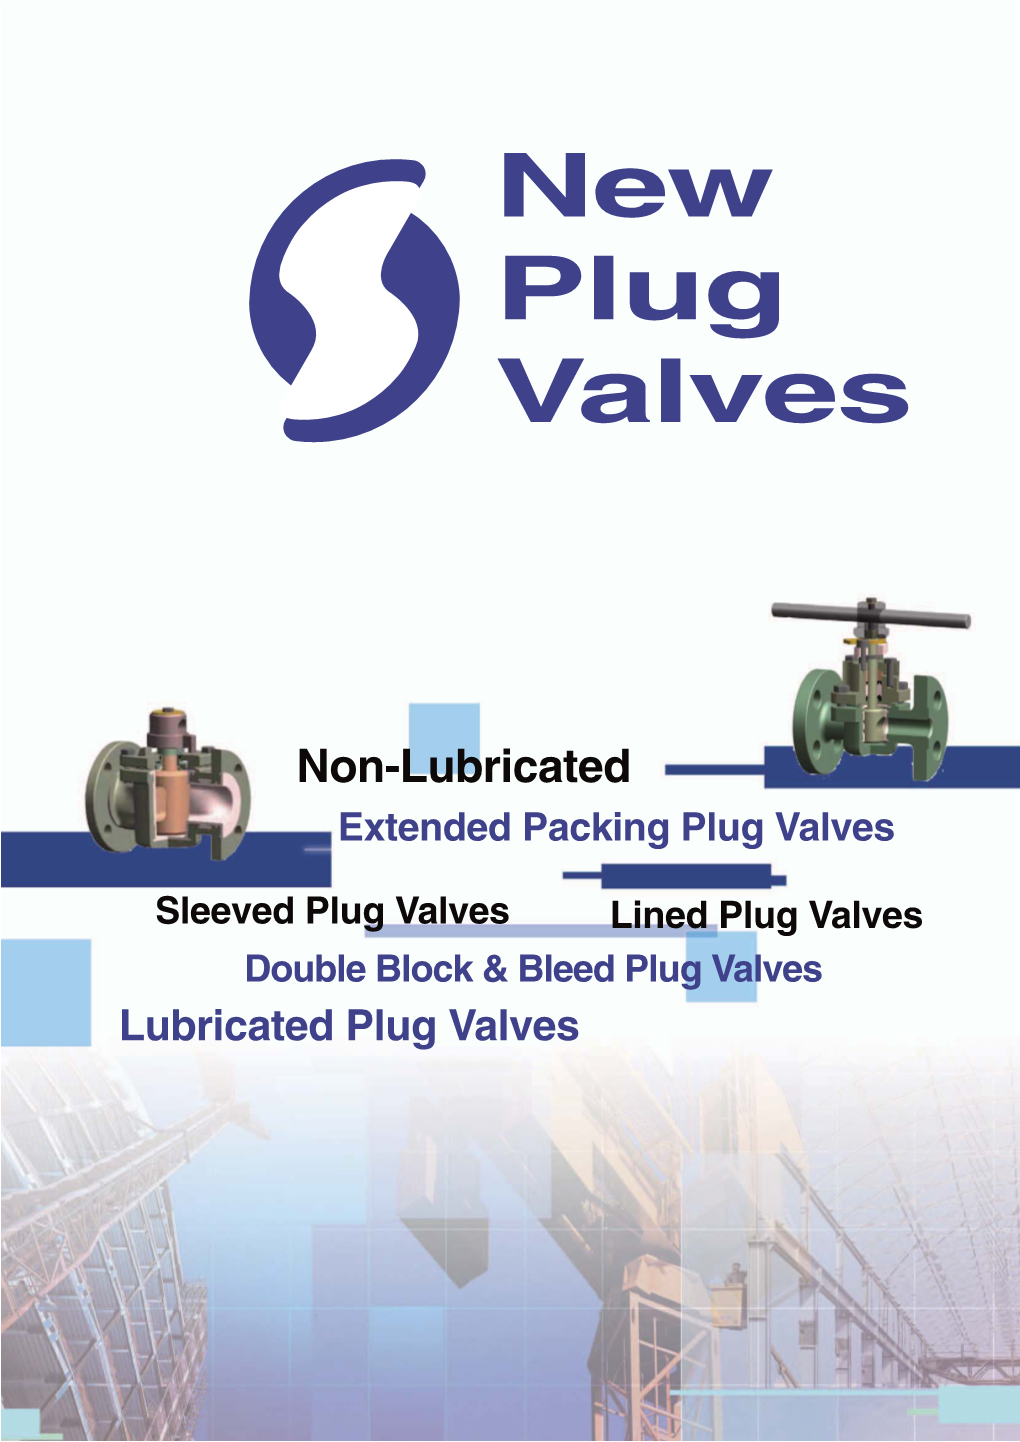 New Plug Valves